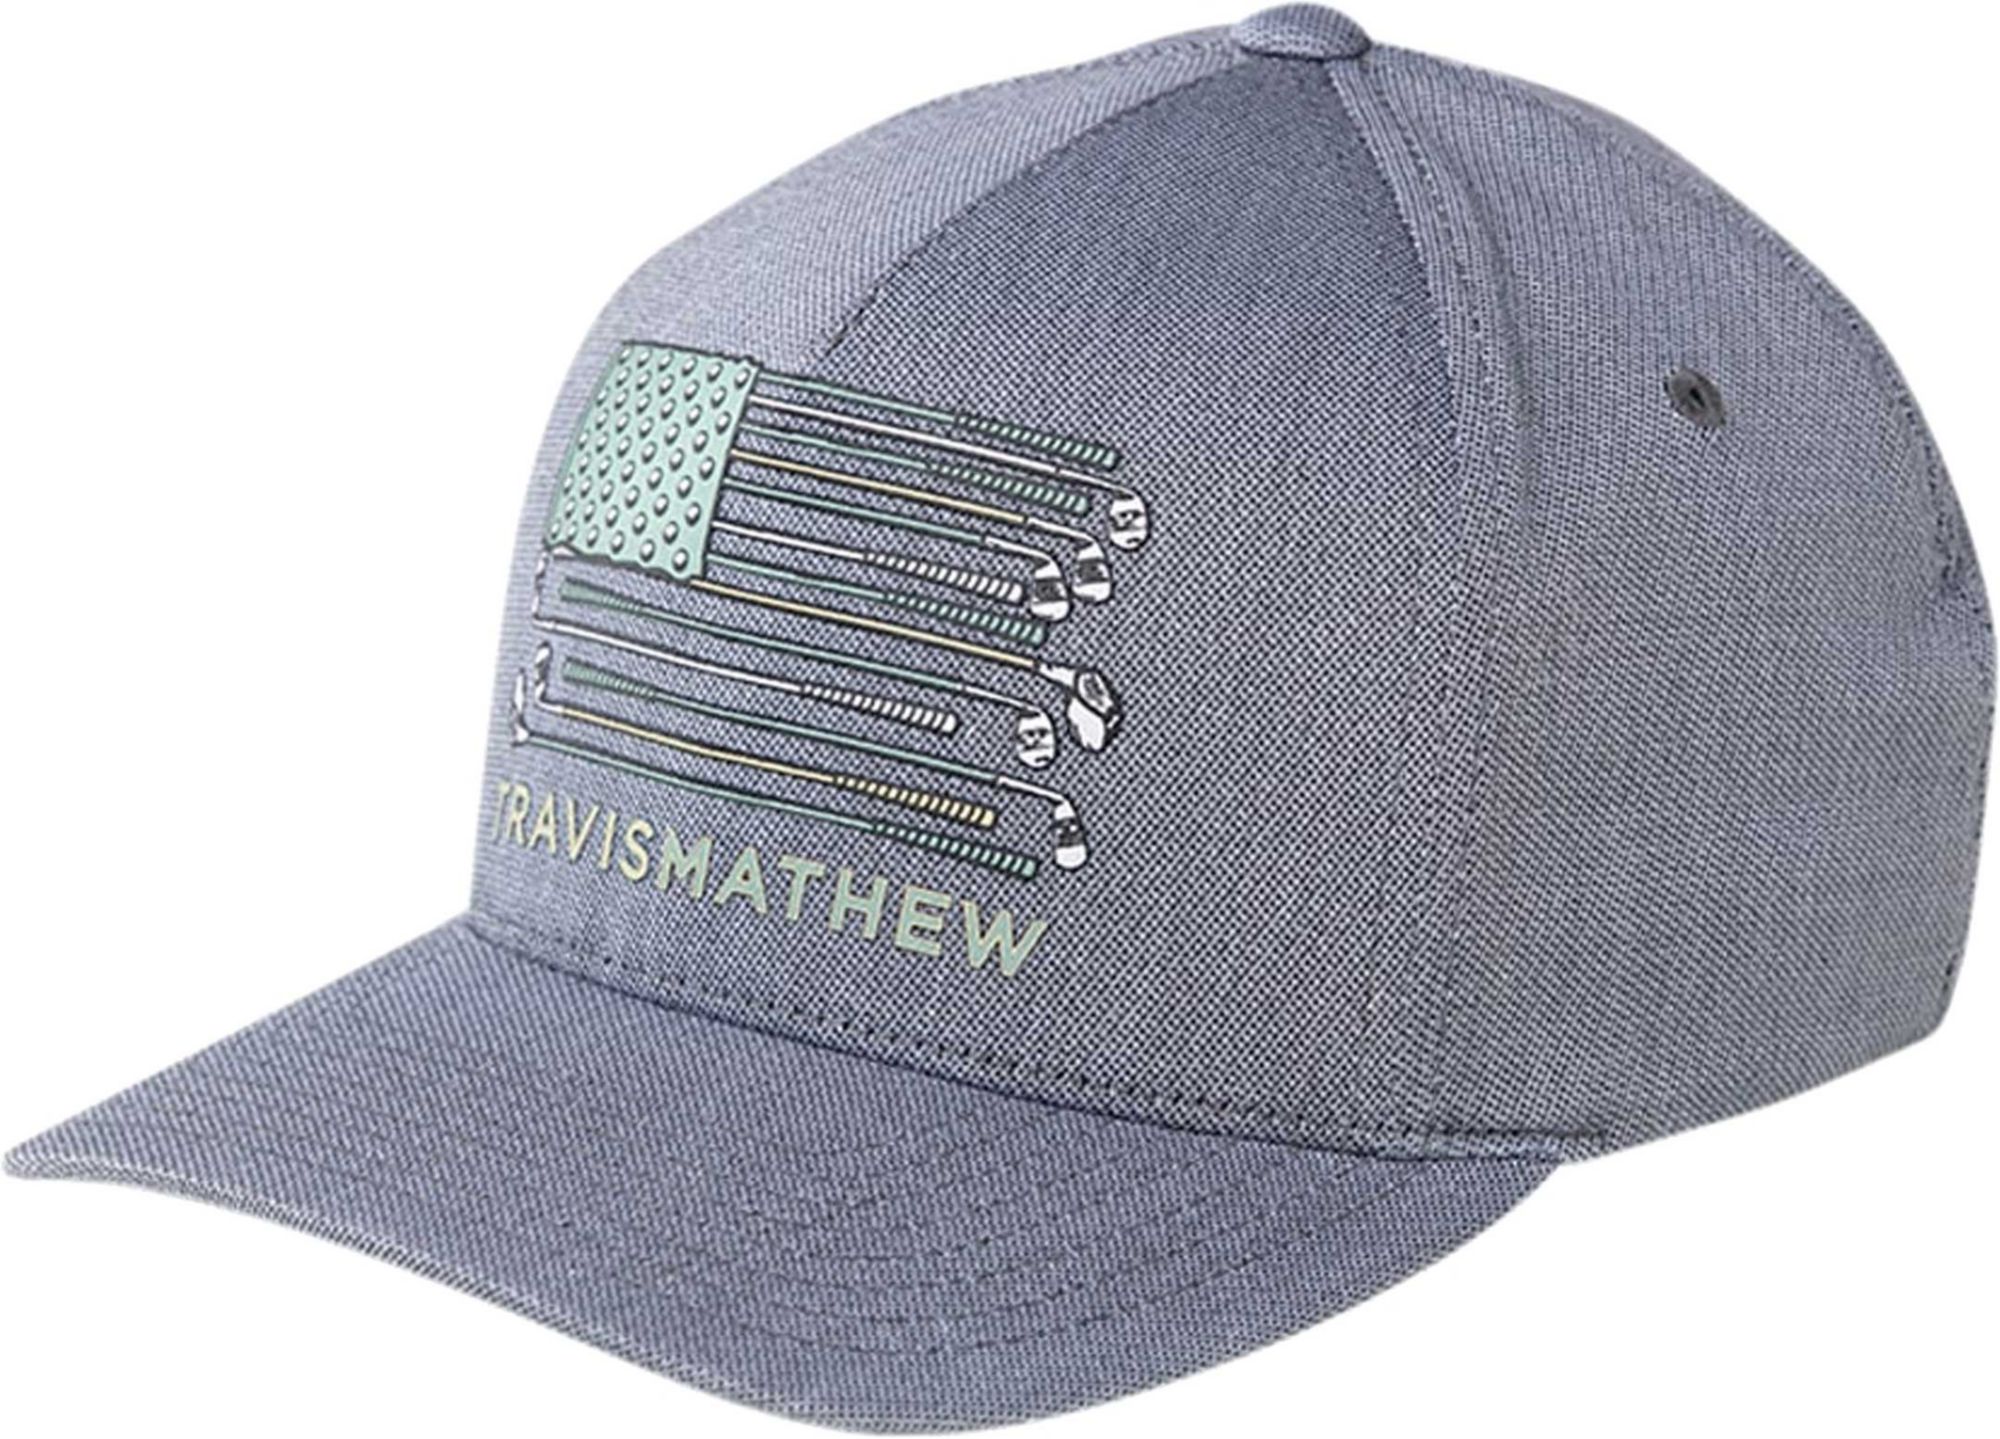 travis mathew golf sucks hat